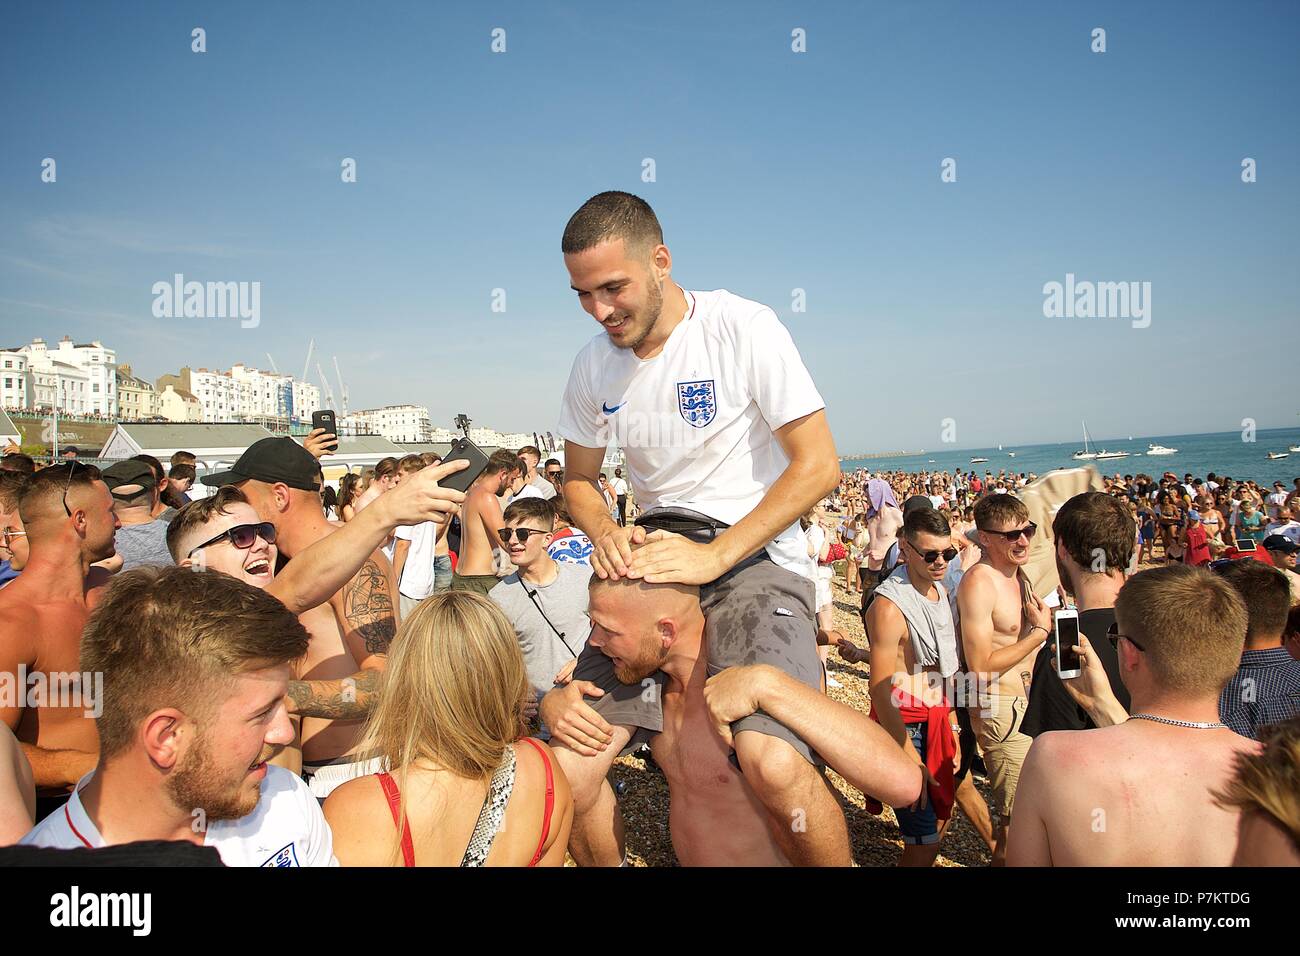 Brighton, UK. 7. Juli 2018. Fußball-Fans auf Brighton Beach beobachten die grossen Schirm am Strand durch die Barrieren der Credit: Rupert Rivett/Alamy leben Nachrichten Stockfoto